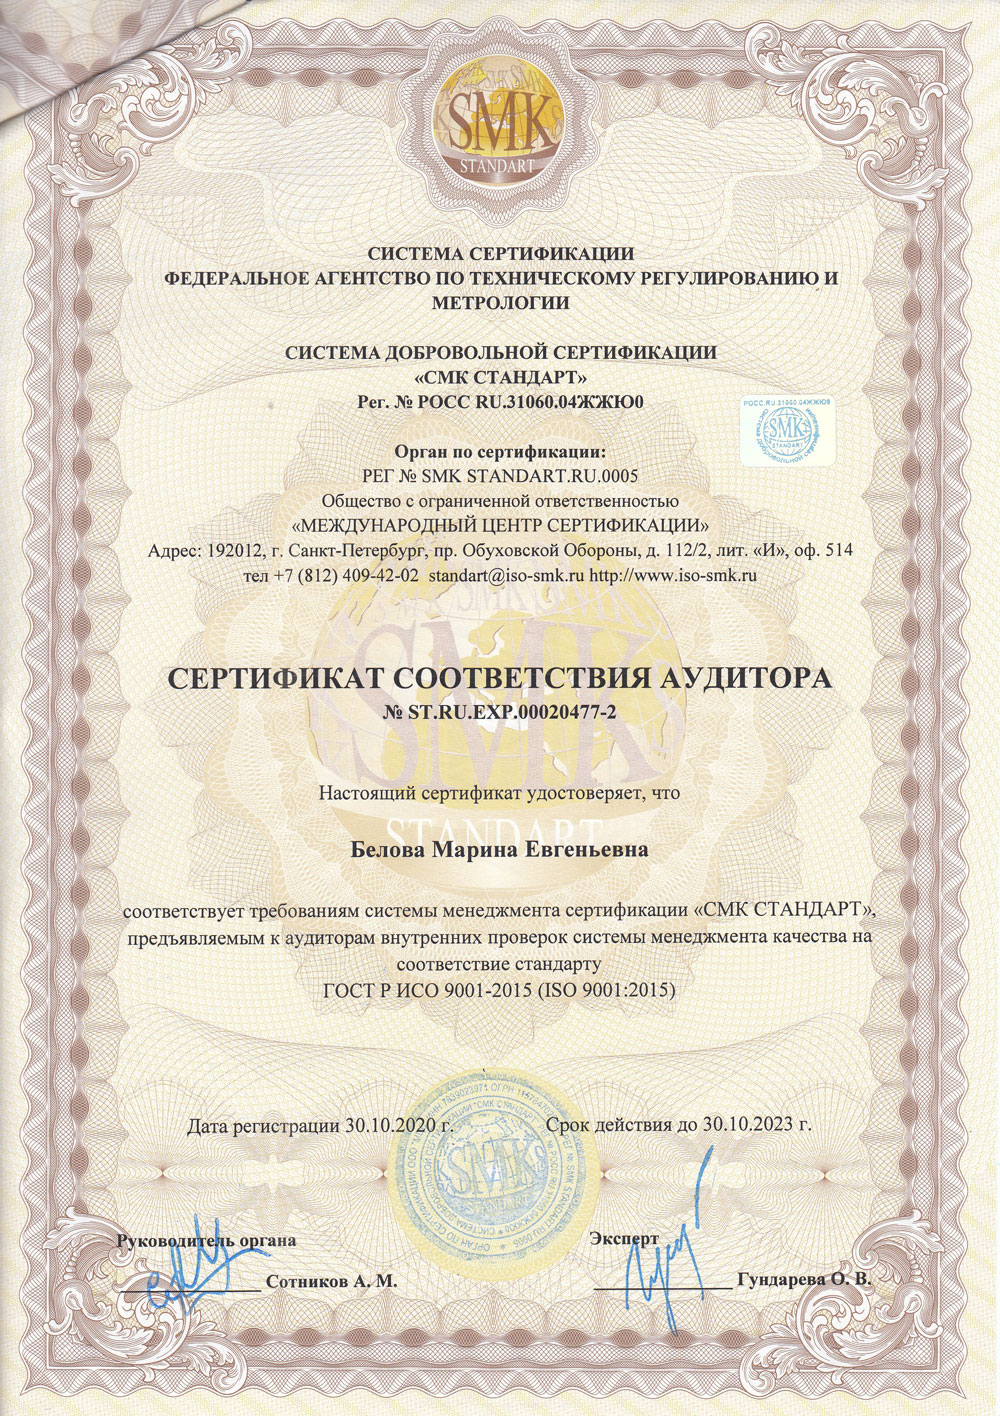 Сертификат соответствия аудитора №ST.RU.EXP.00020477-2